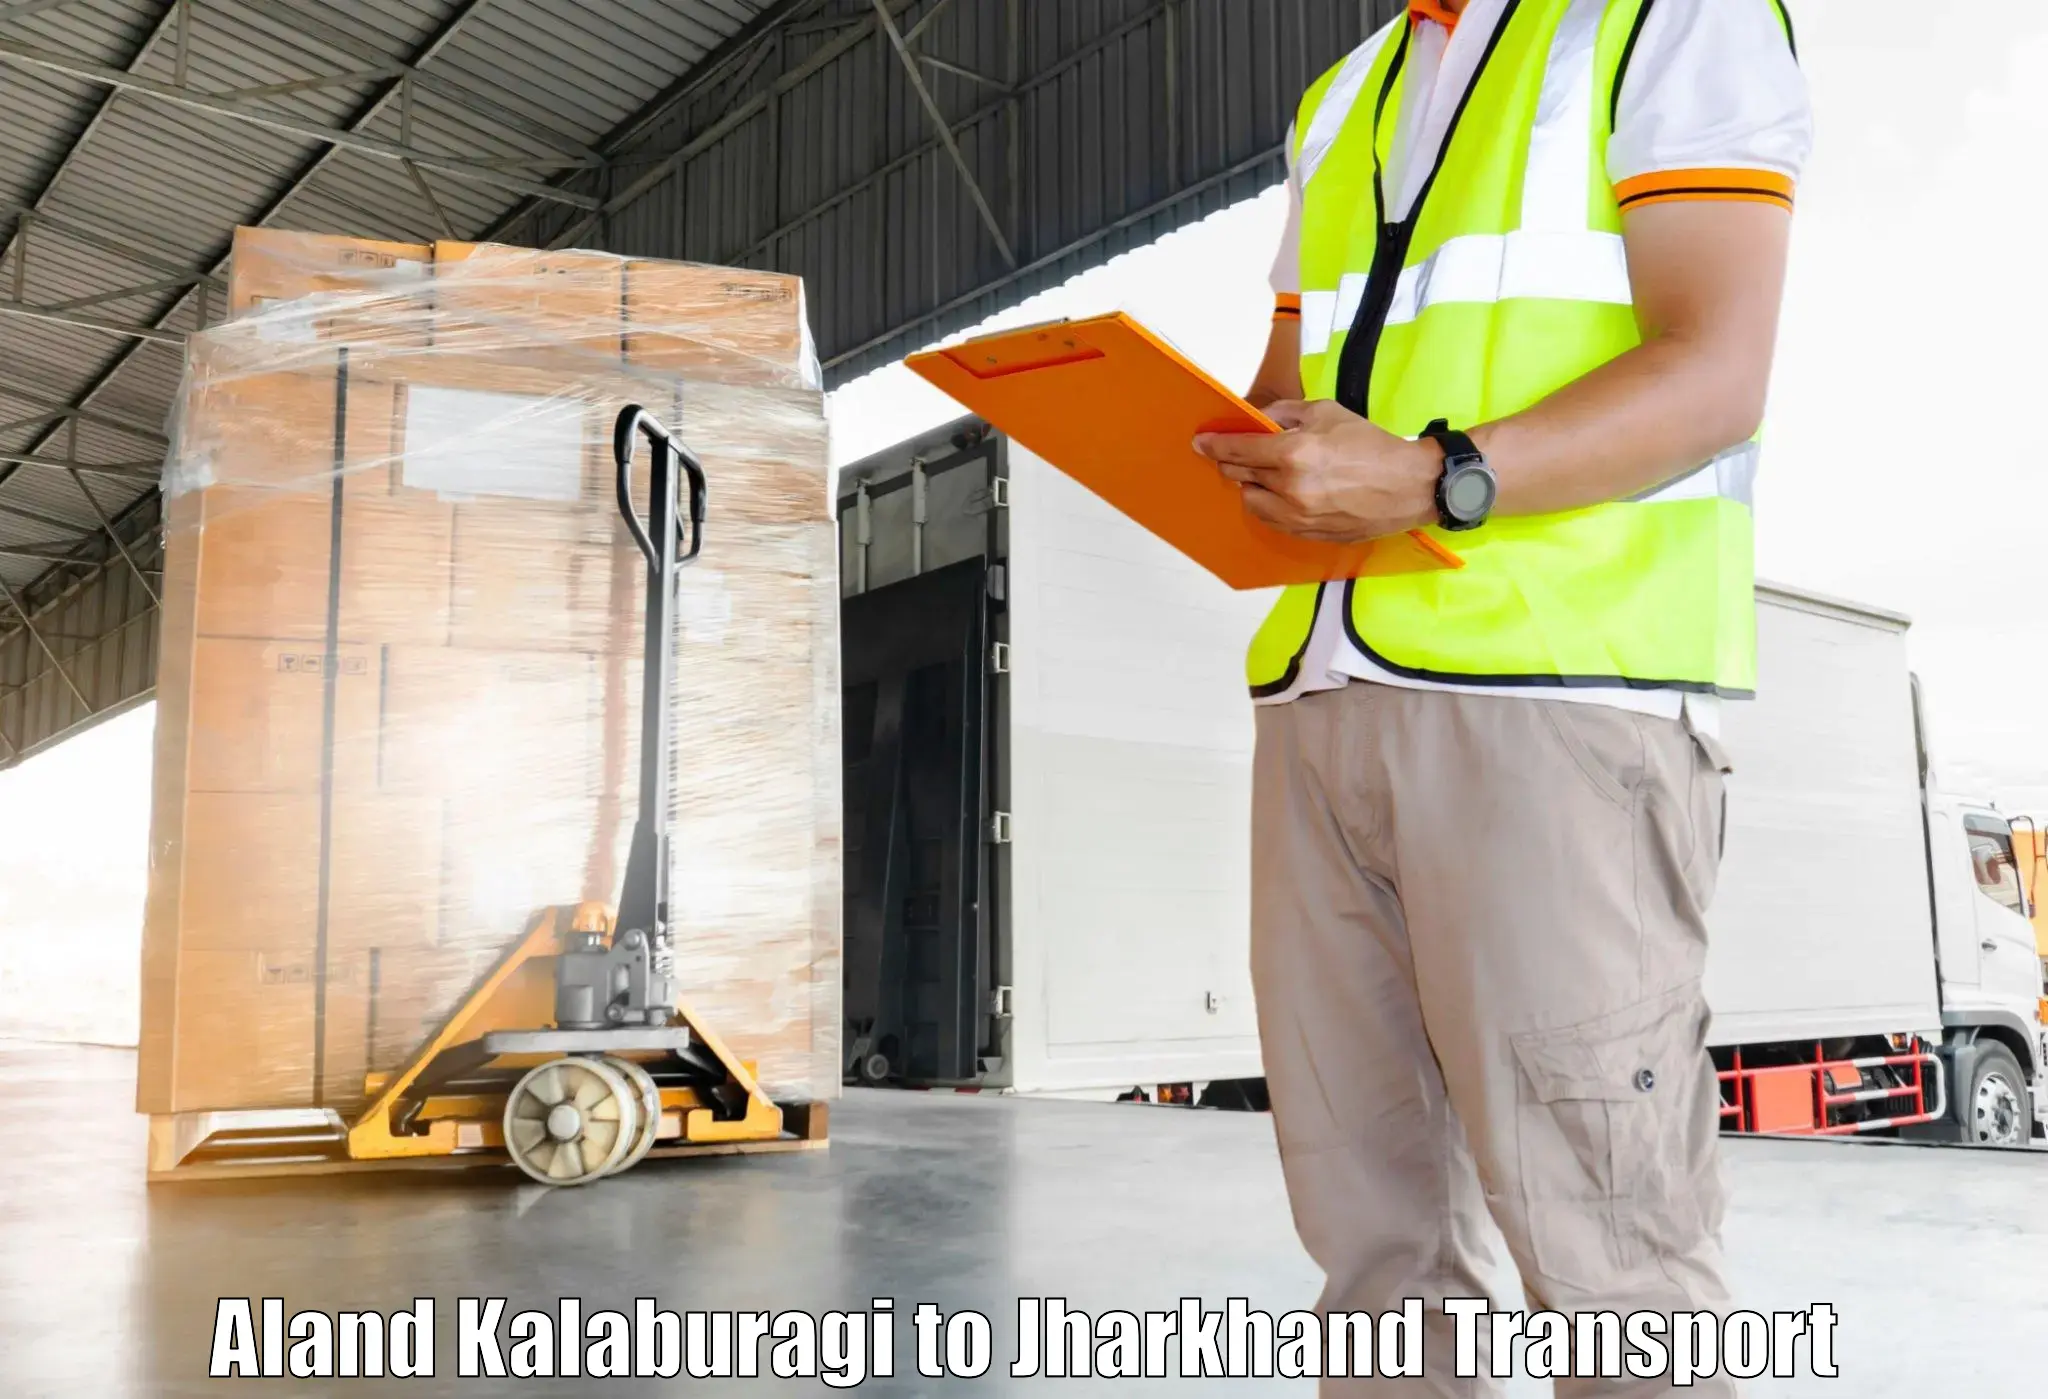 Container transport service Aland Kalaburagi to Palojori